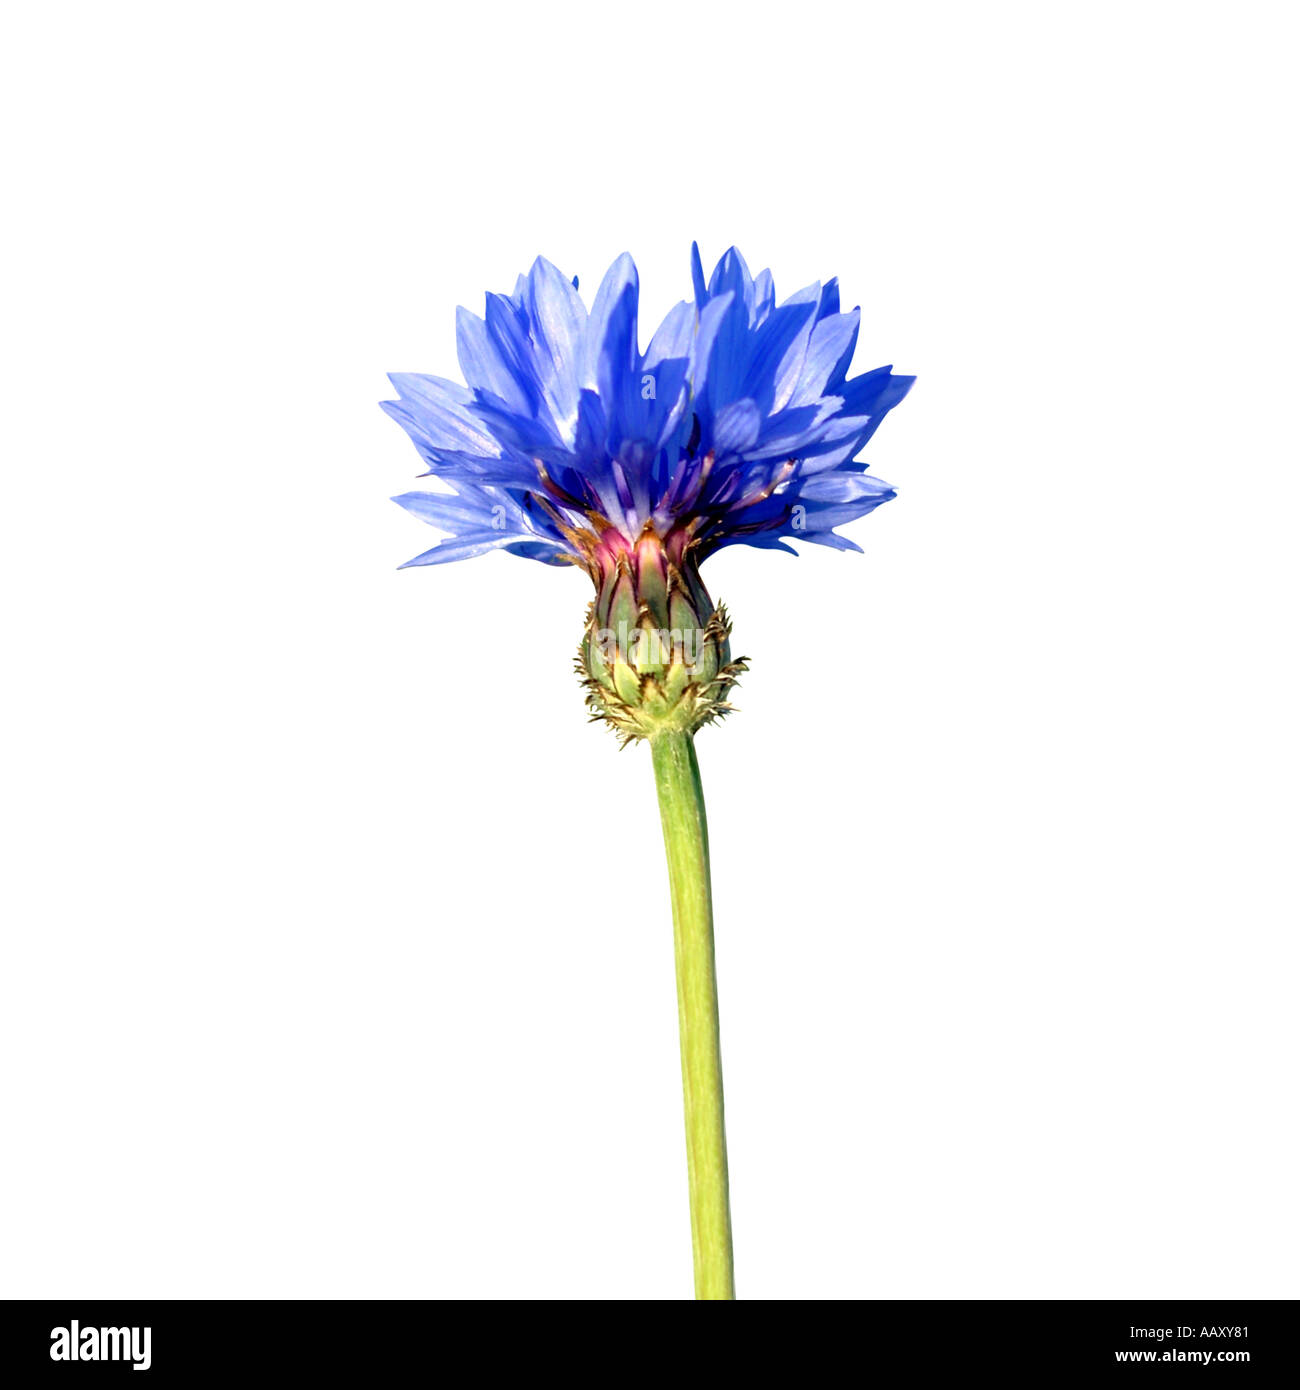 Bluebottle flower on white Stock Photo